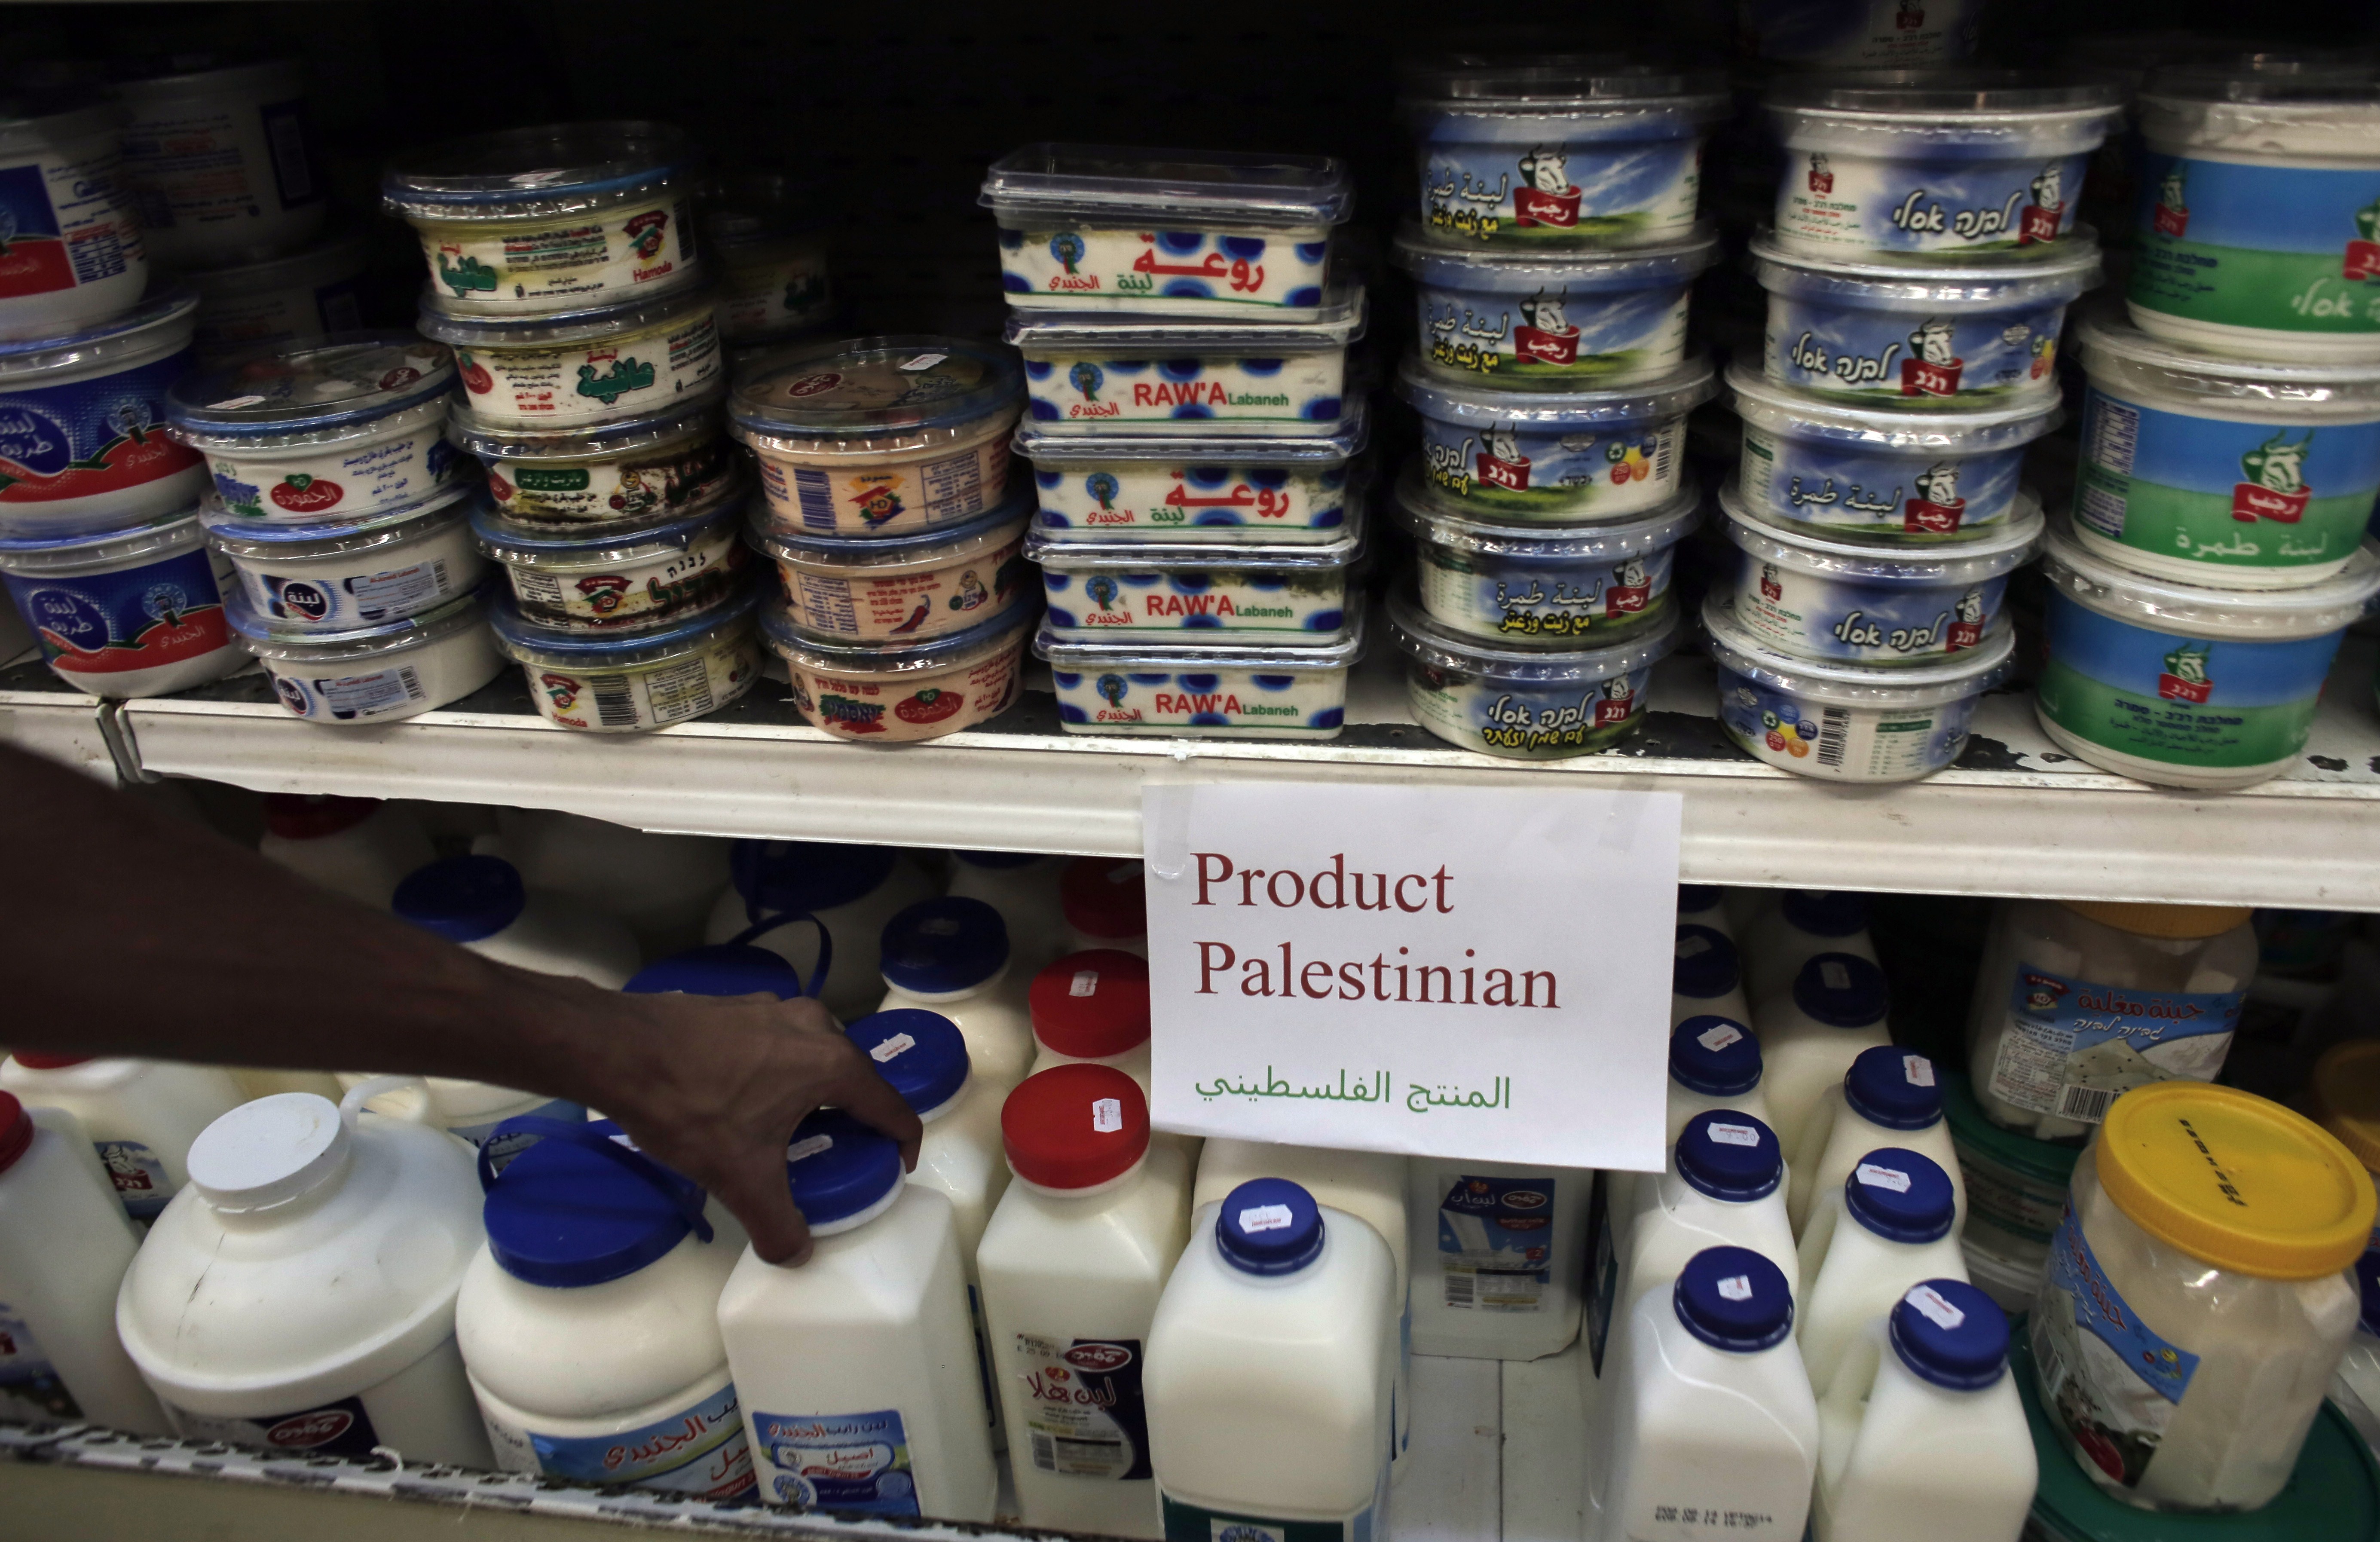 مسؤول إسرائيلي: منع المنتجات الفلسطينية بالقدس يضر بتسويق منتجاتنا